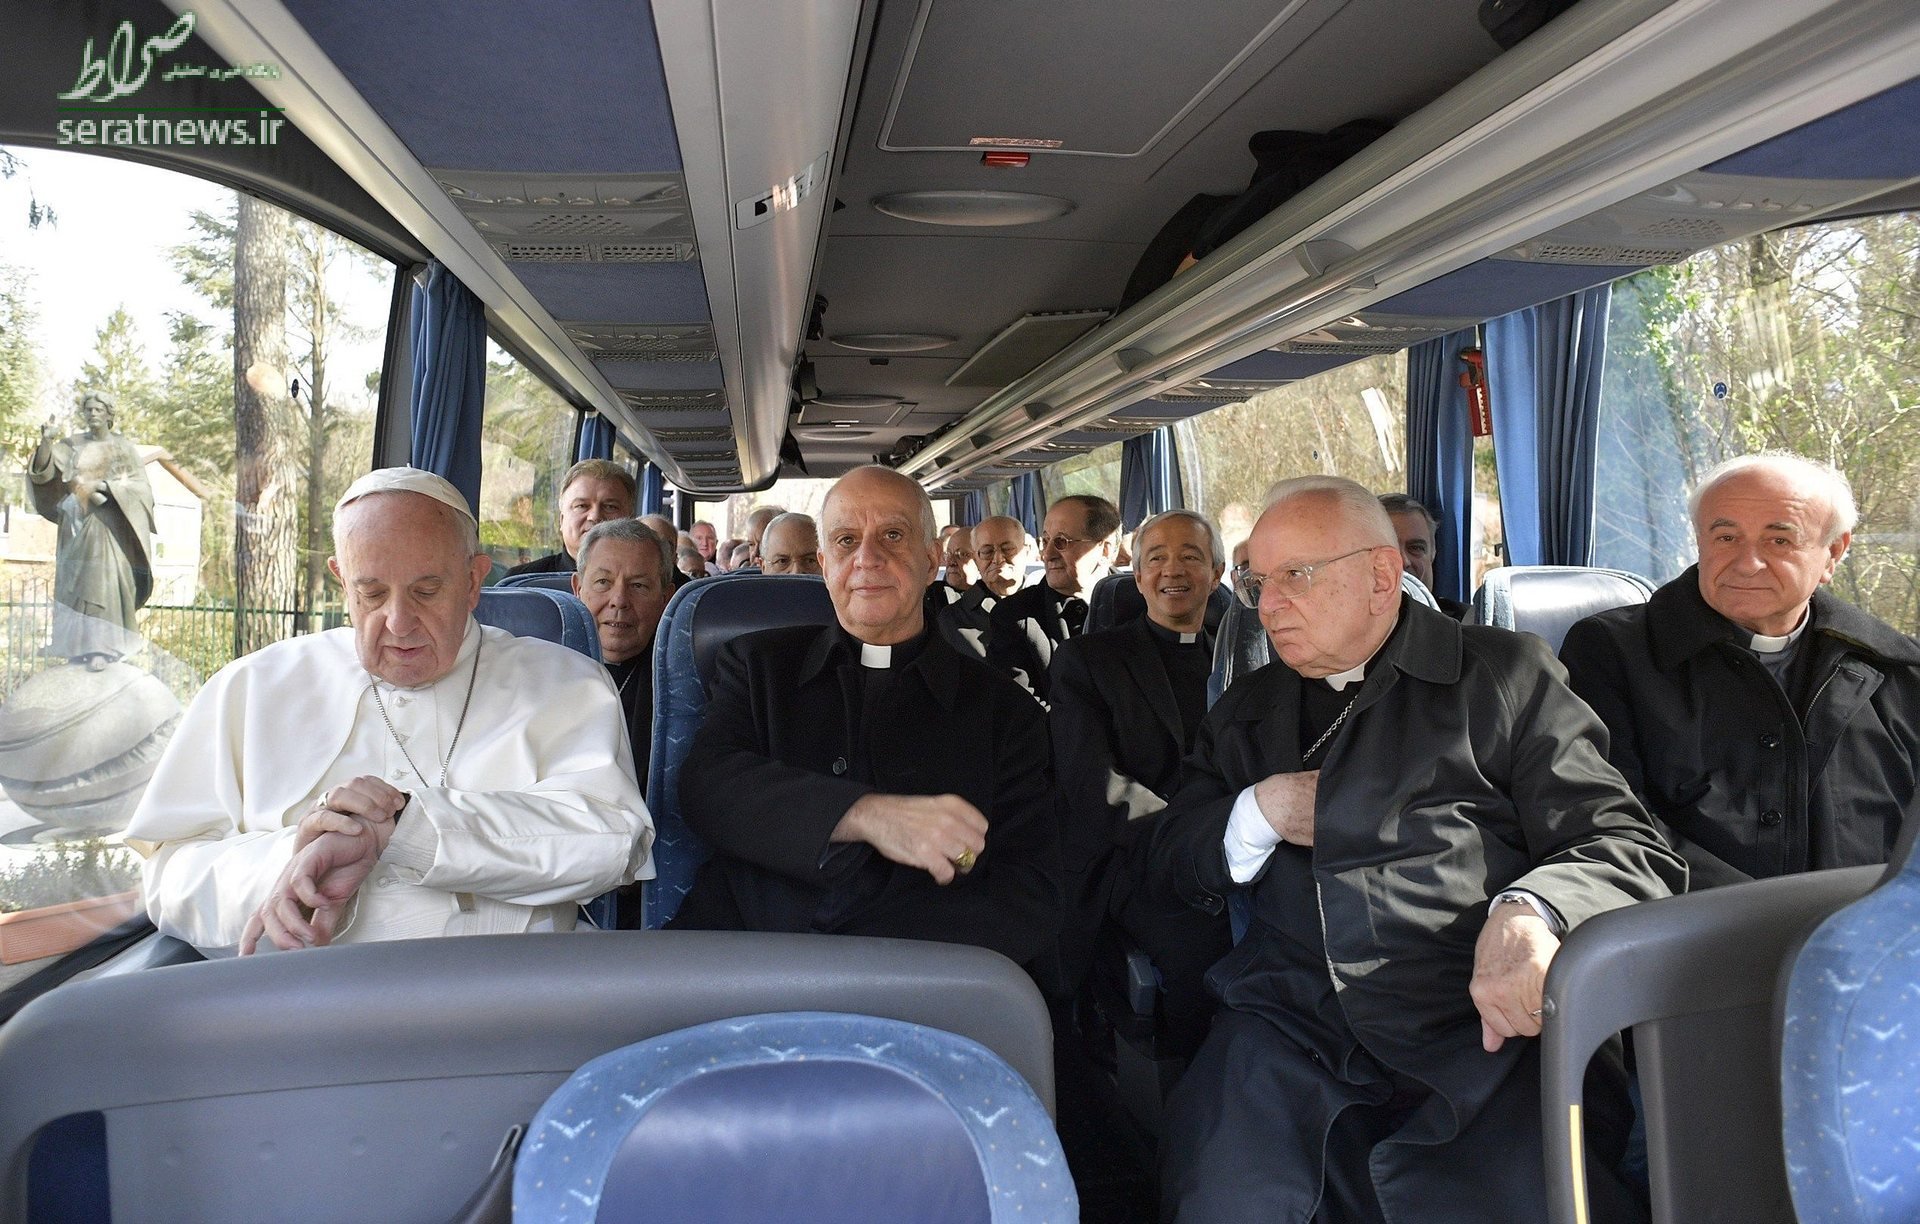 عکس/ پاپ فرانسیس در اتوبوس